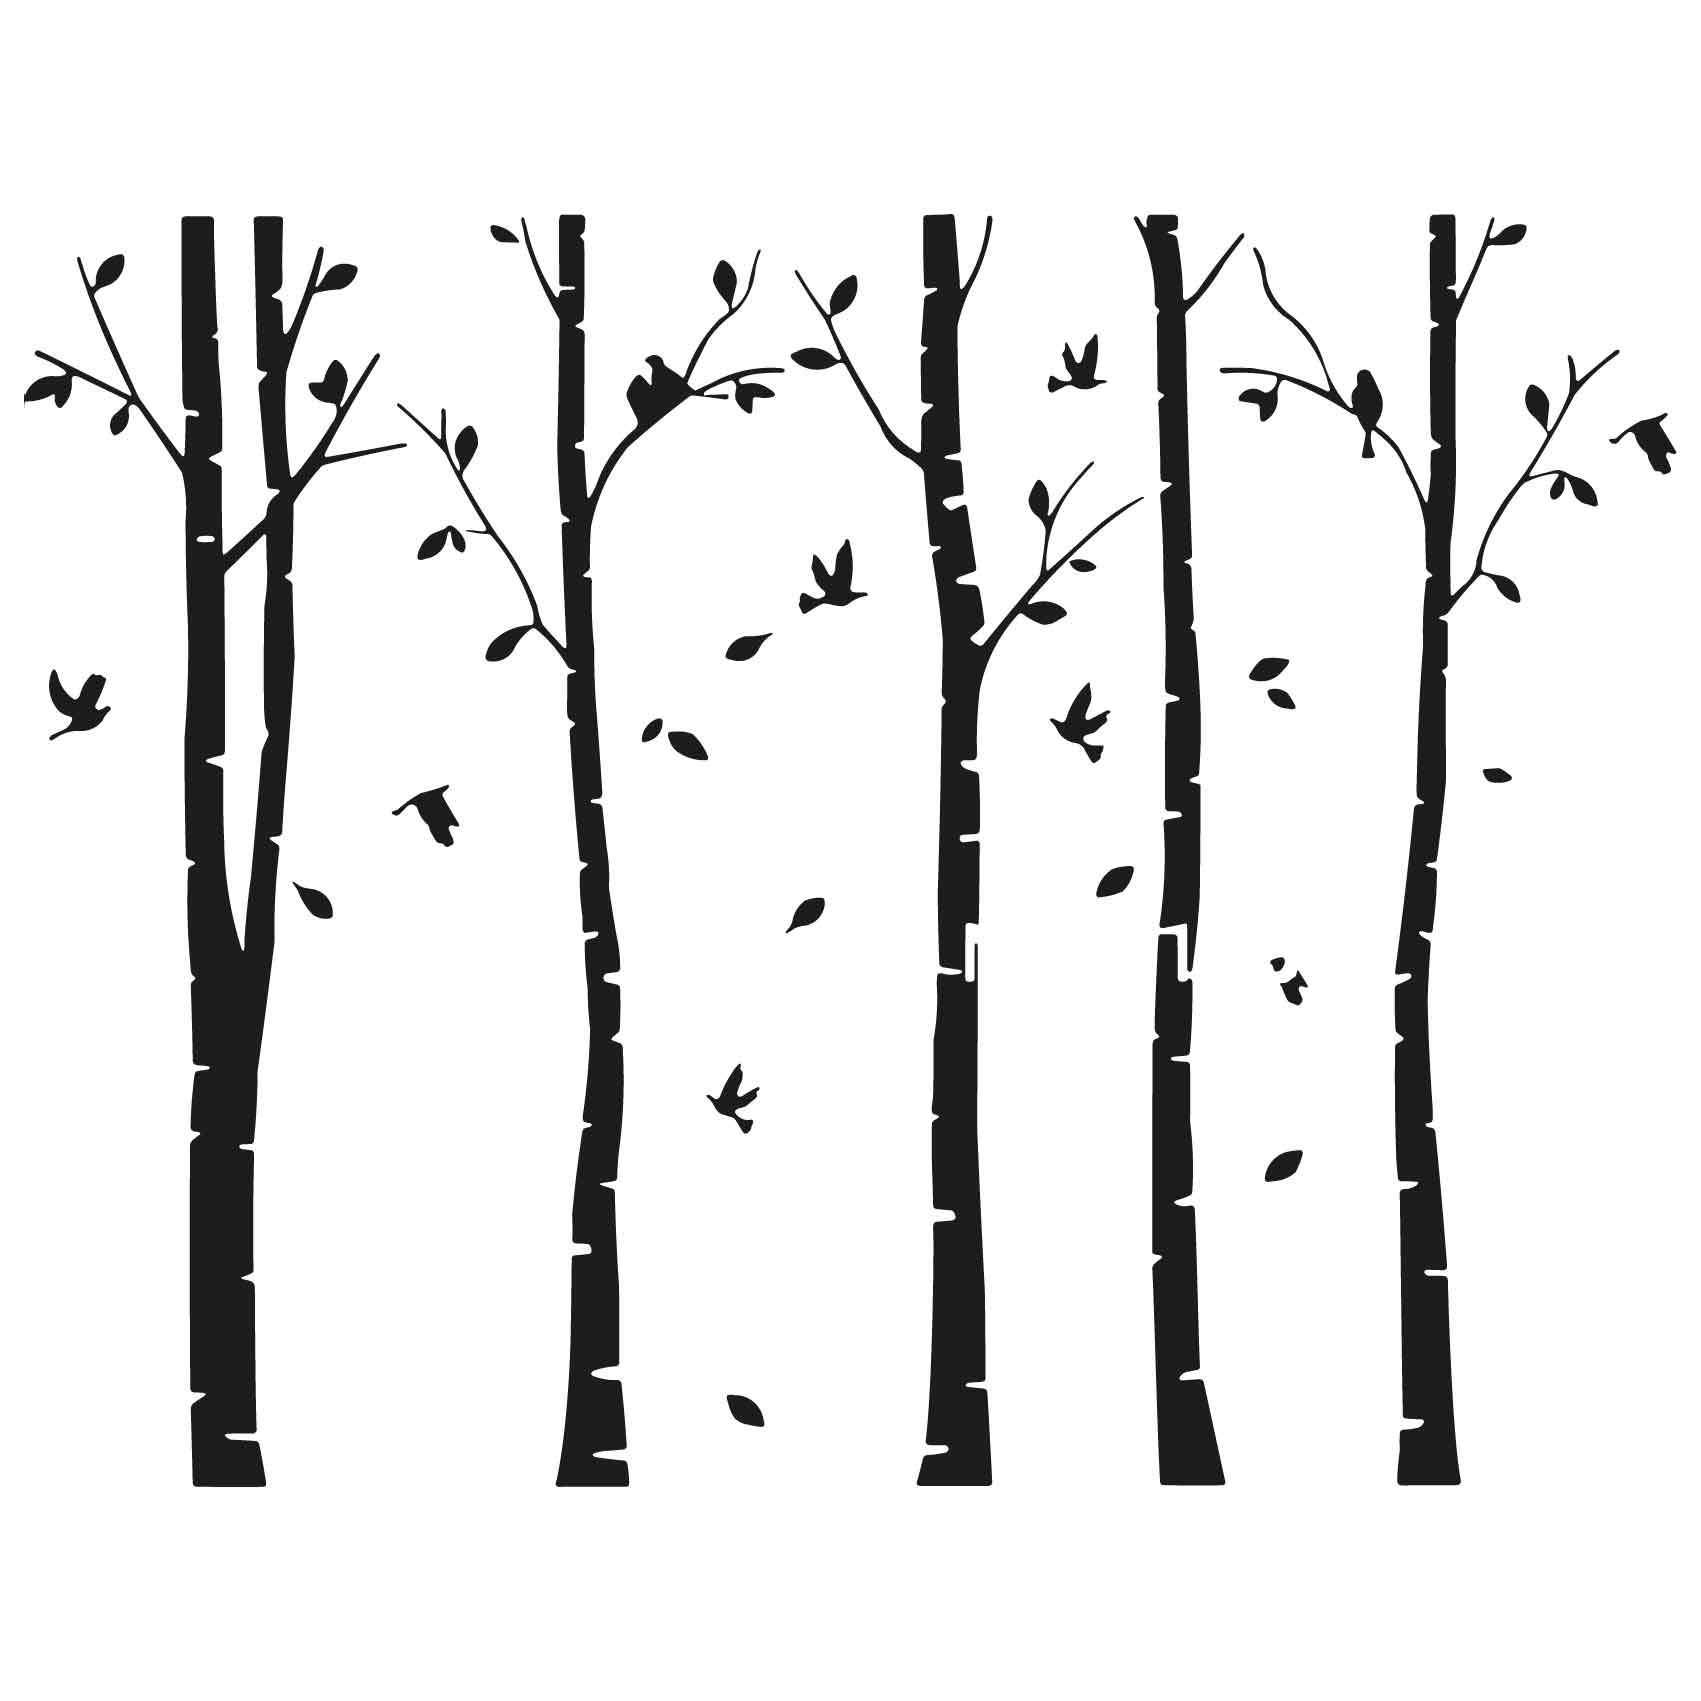 stickers-oiseaux-foret-arbres-ref36arbre-autocollant-muraux-sticker-geant-arbre-deco-branche-noir-rose-gris-vert-blanc-chambre-salon-(2)